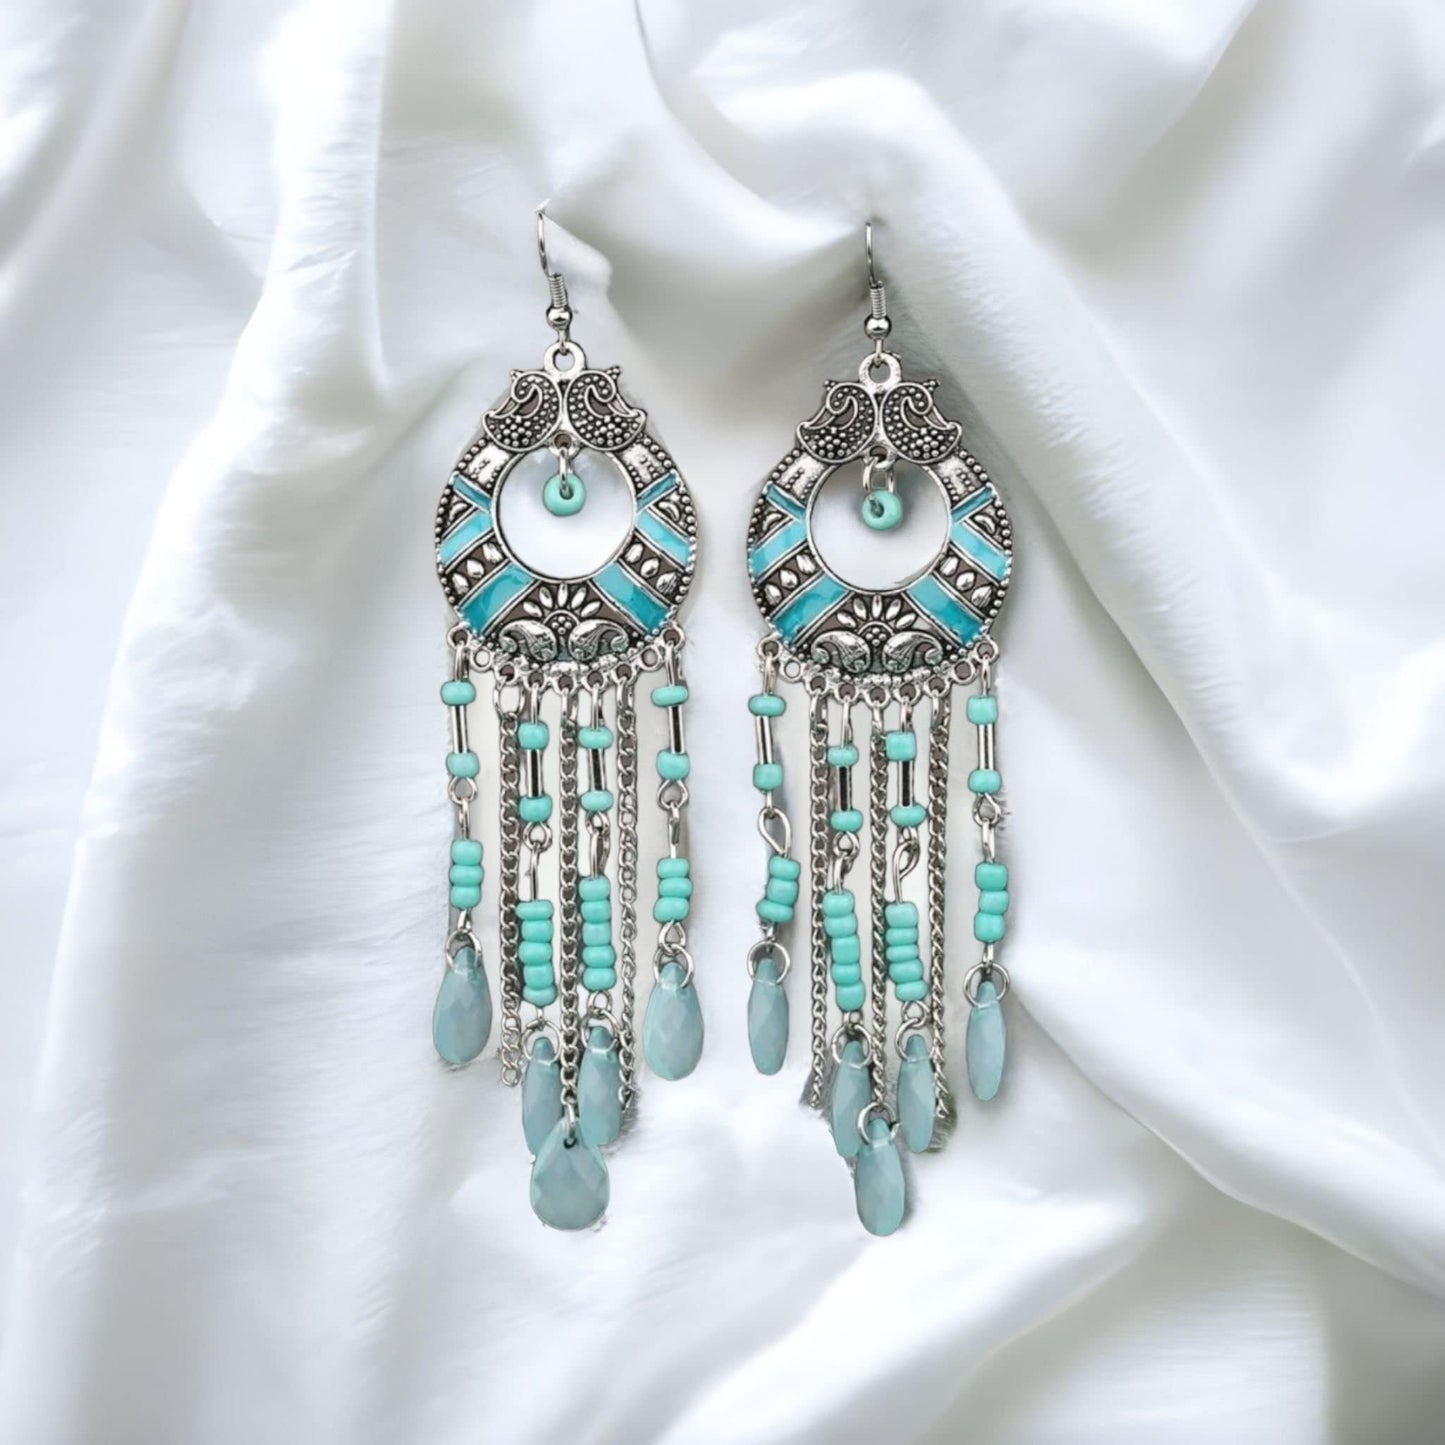 Silver bead earrings dangle drop chandelier